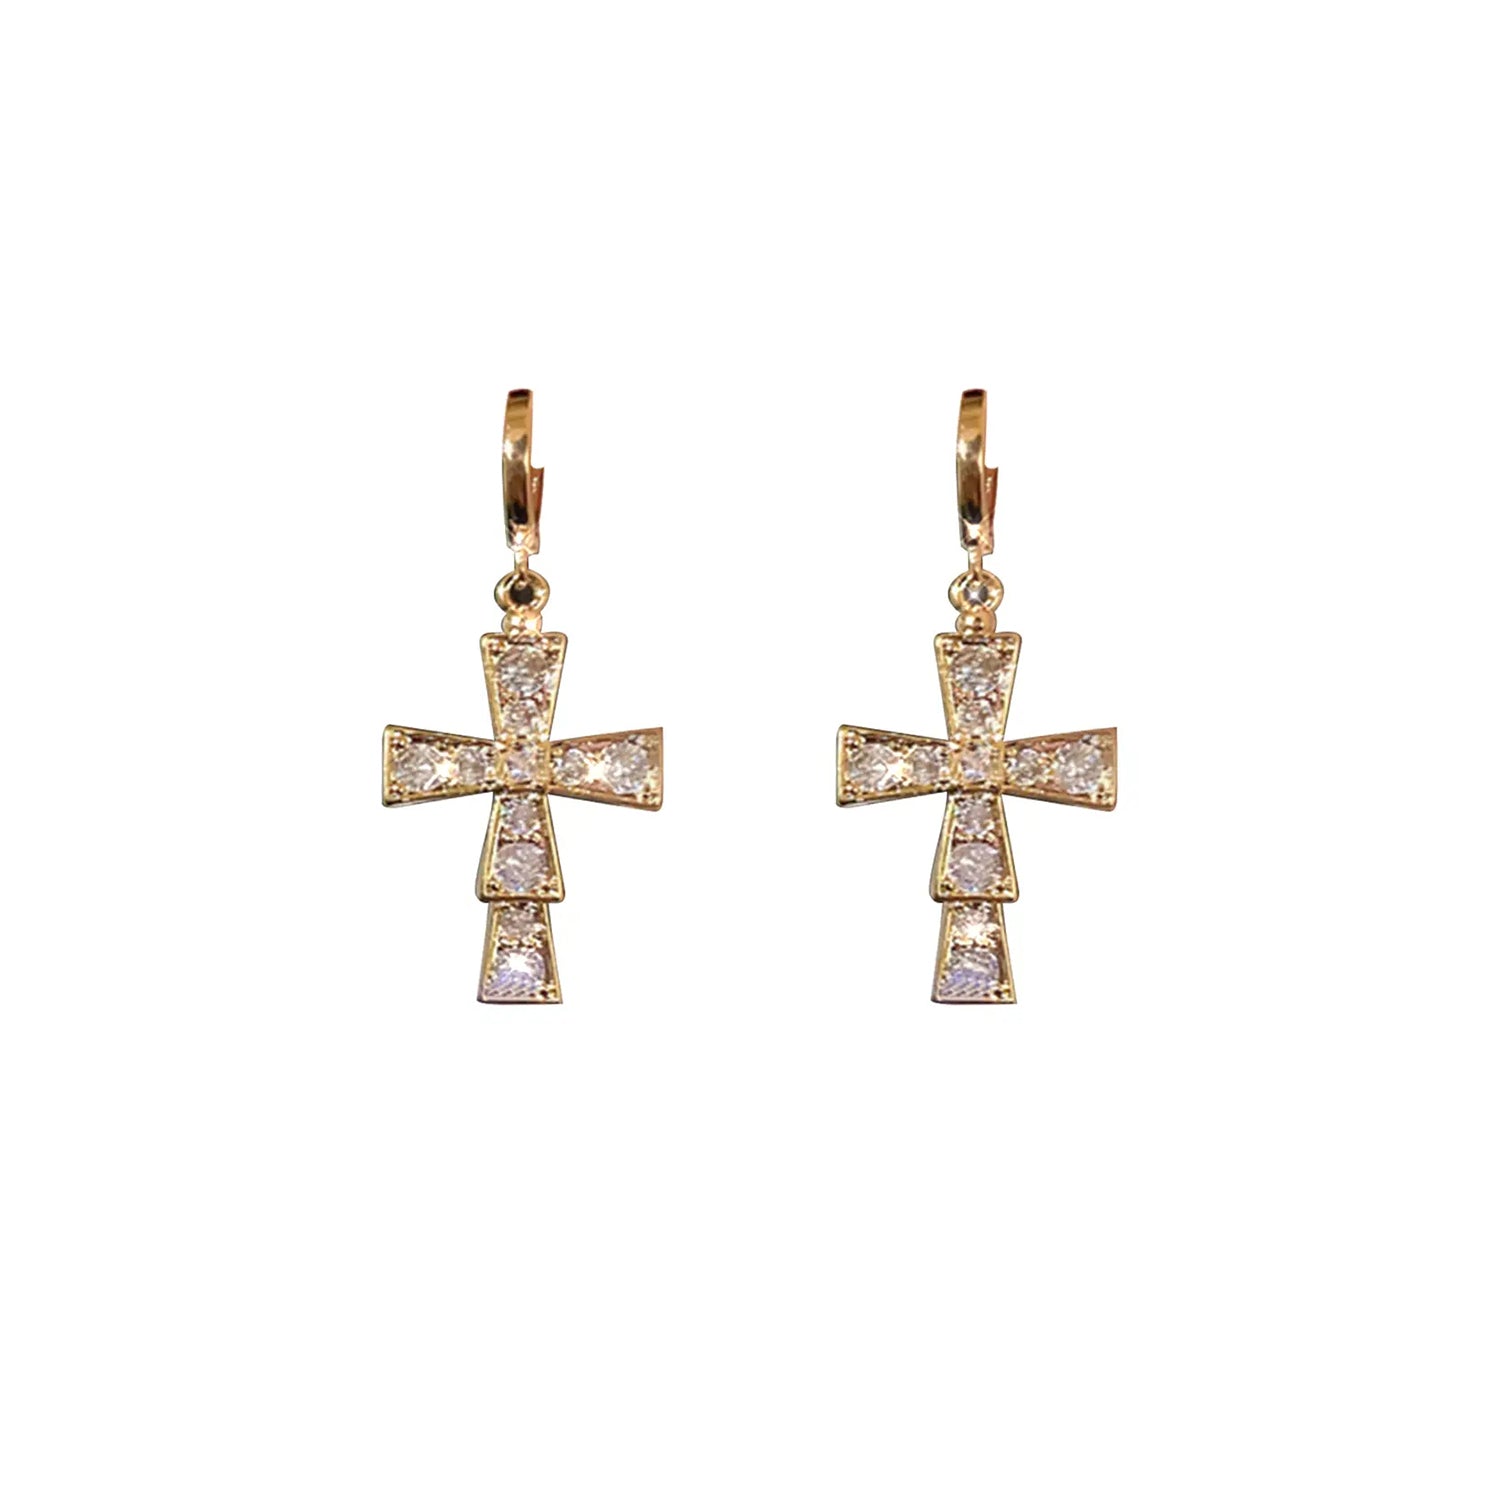 French fashion earrings(HE11760HE11861HE11914)-Cross